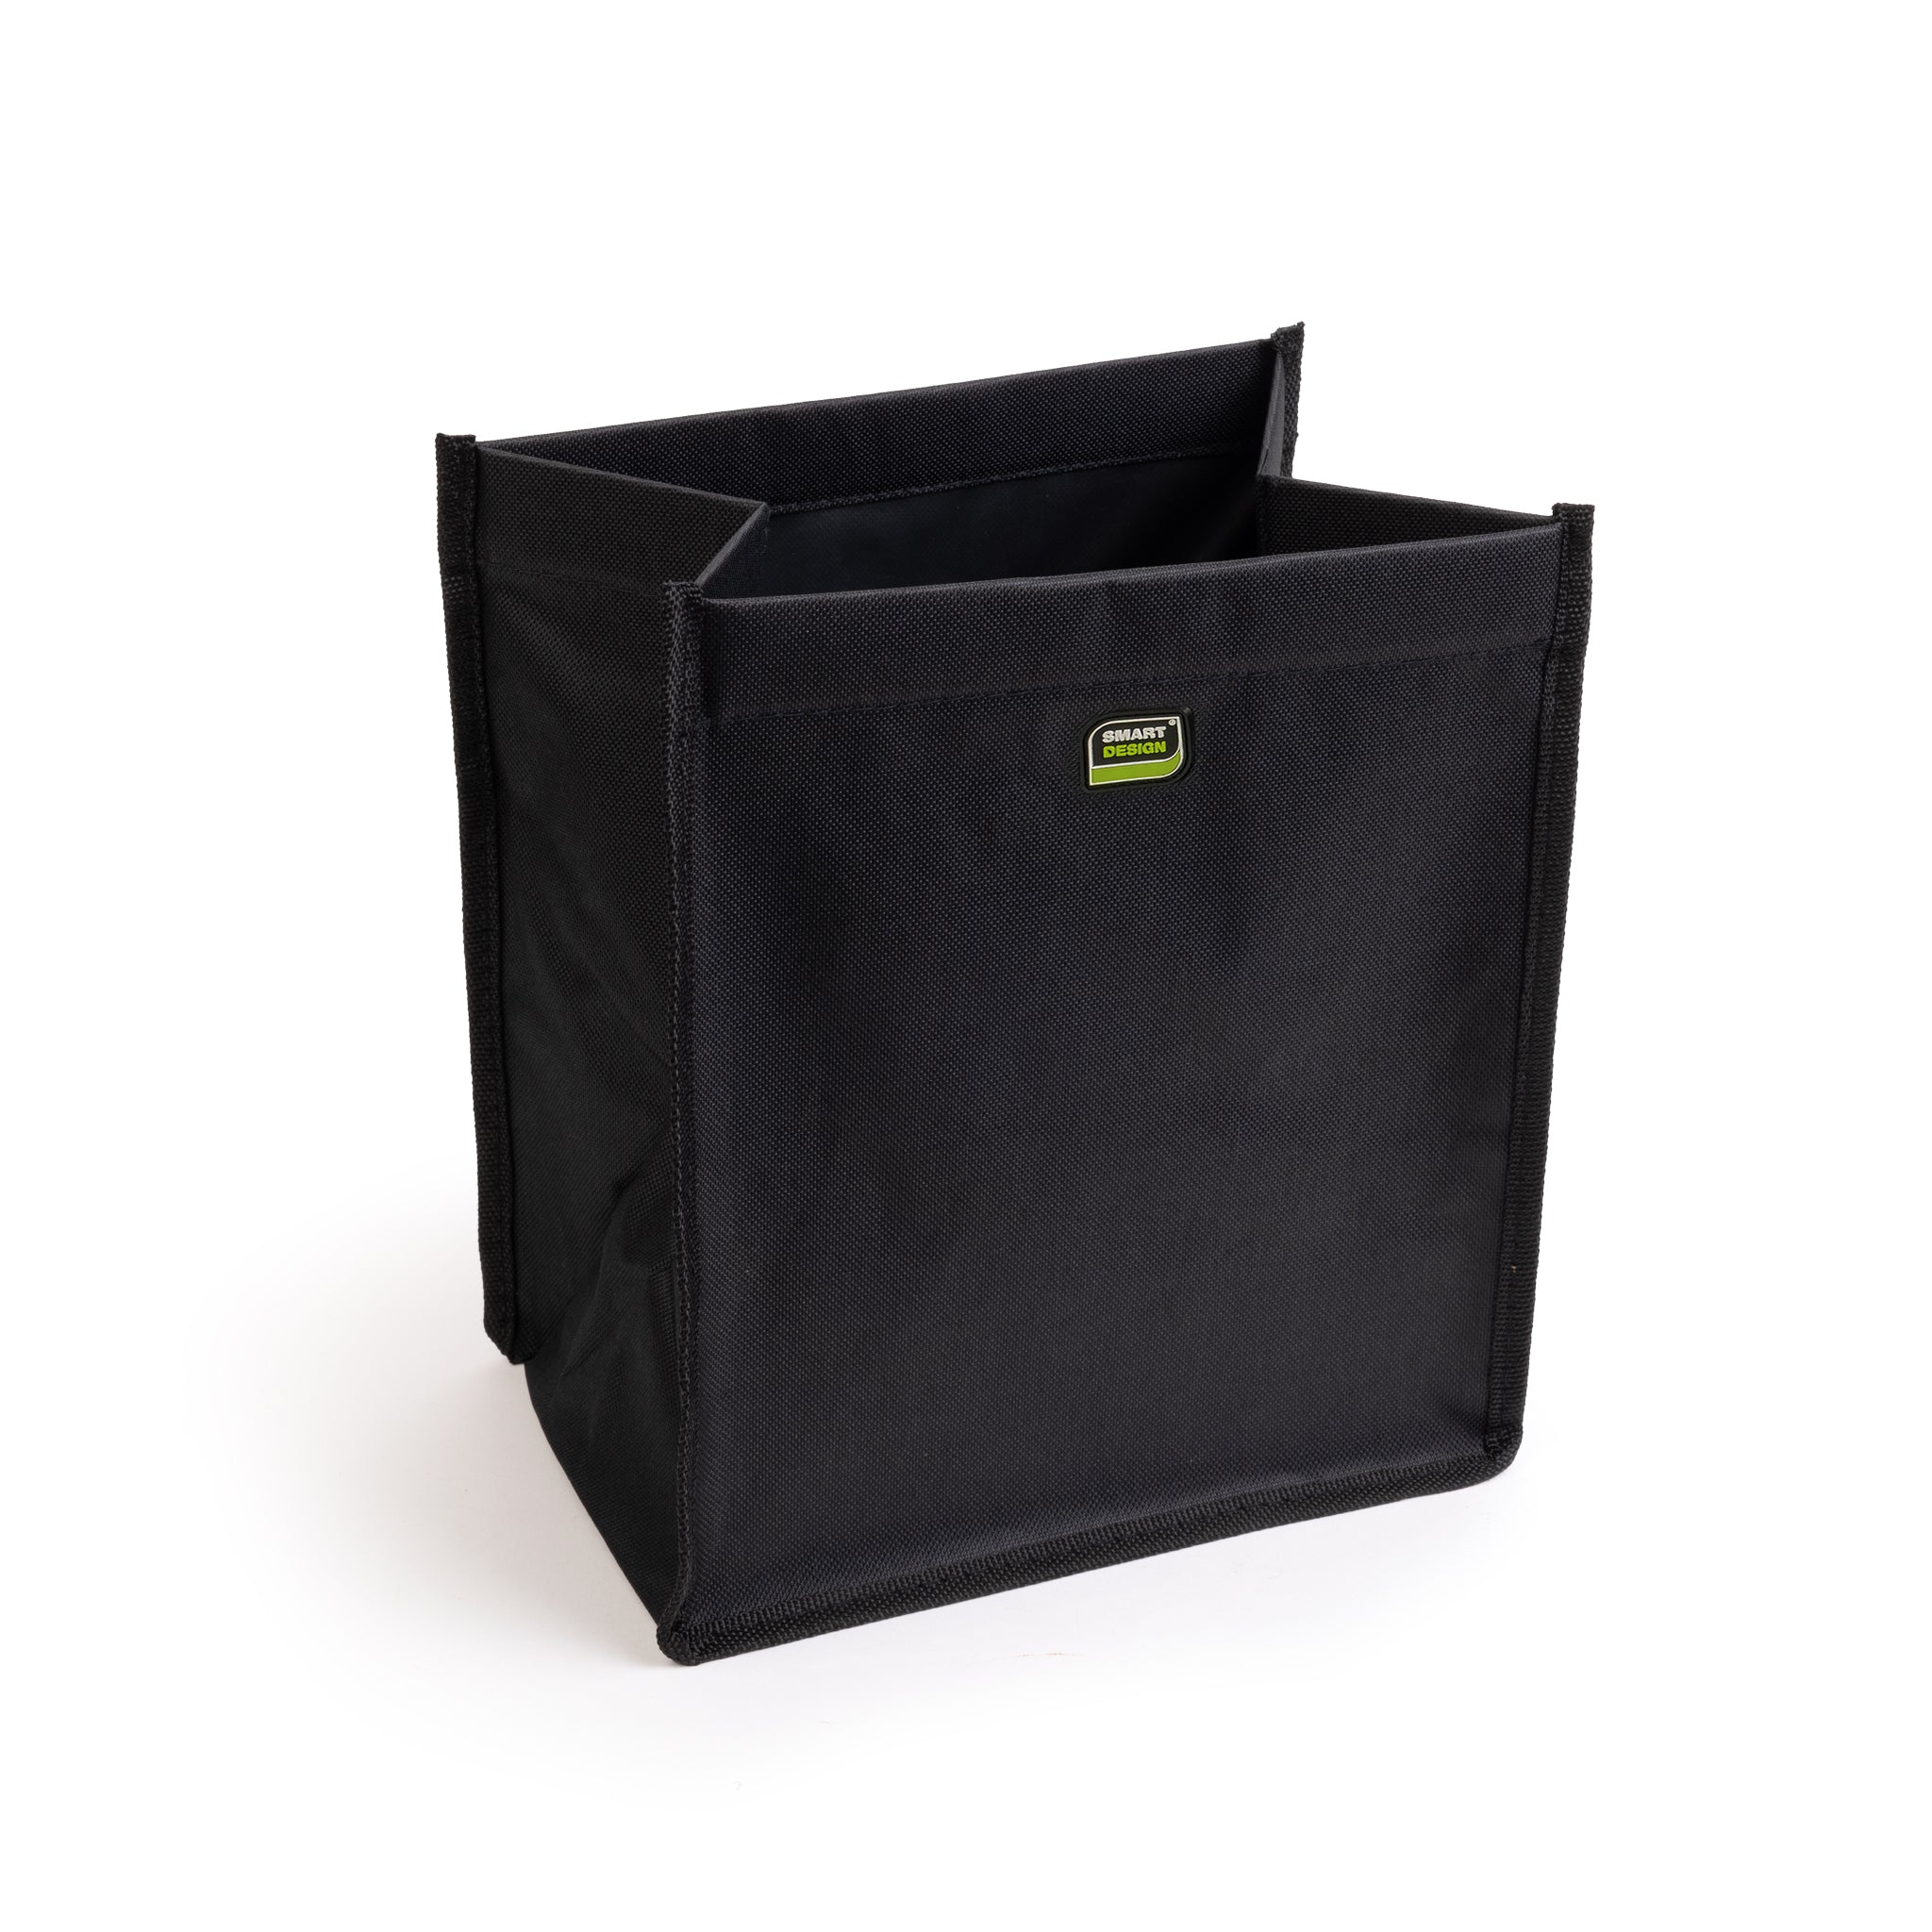 Vehicle Waste Bag with Adjustable Strap - Black - Smart Design® 2